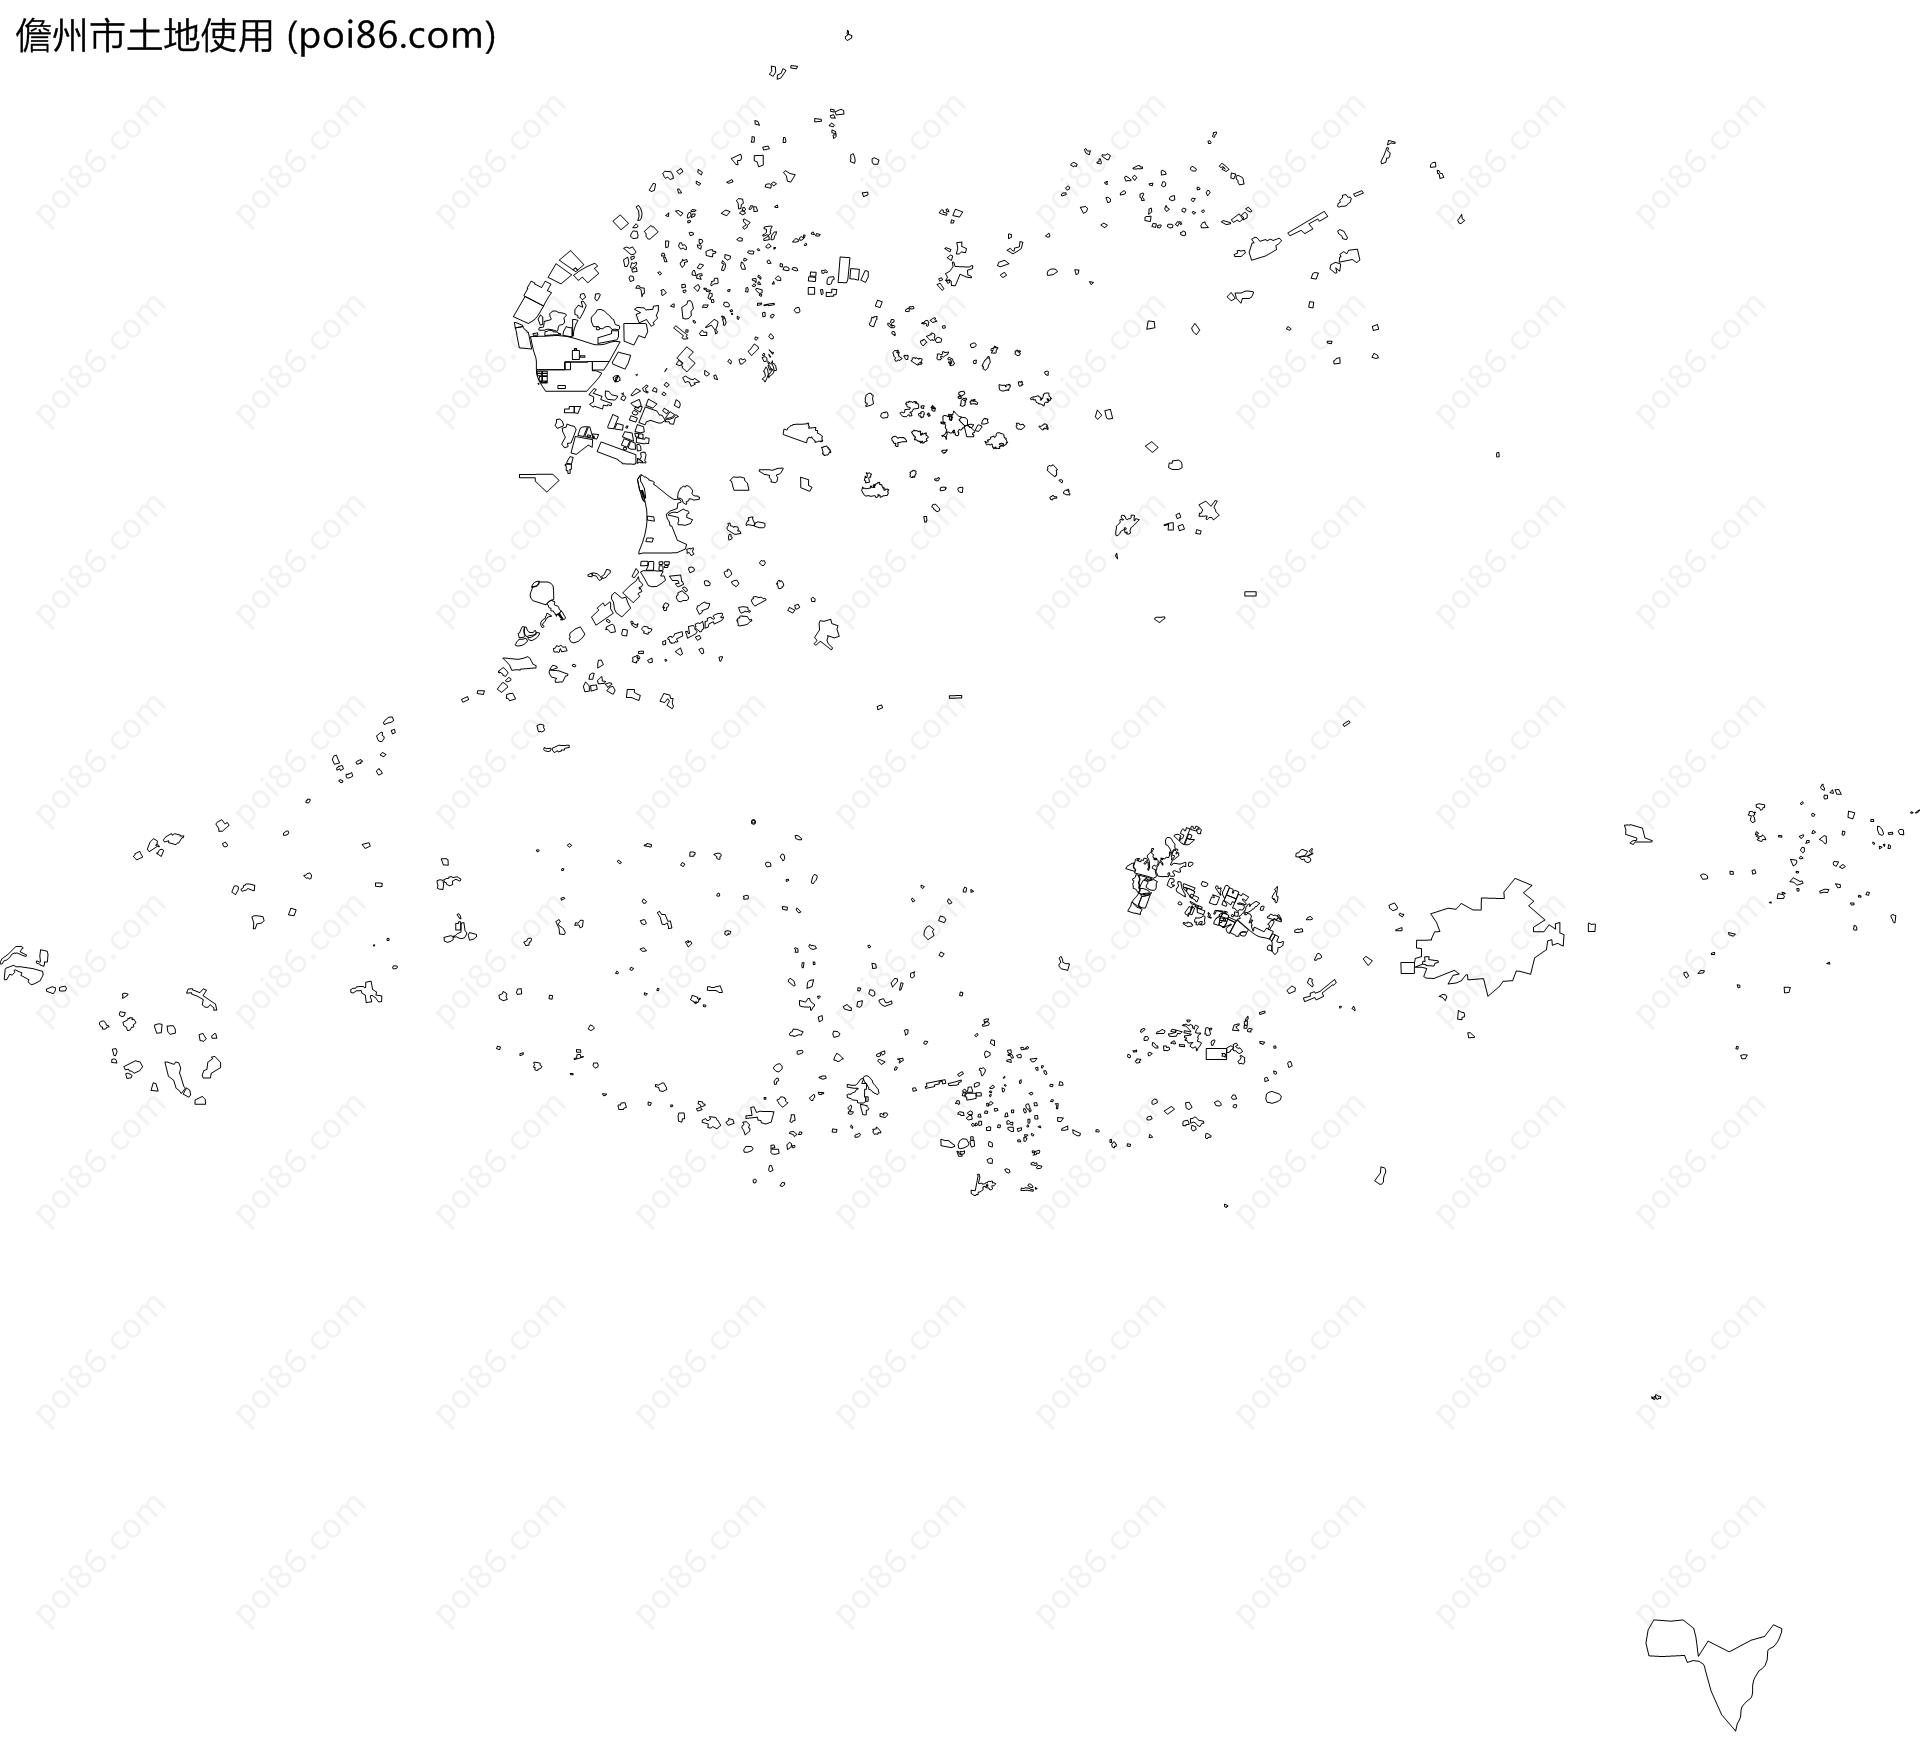 儋州市土地使用地图